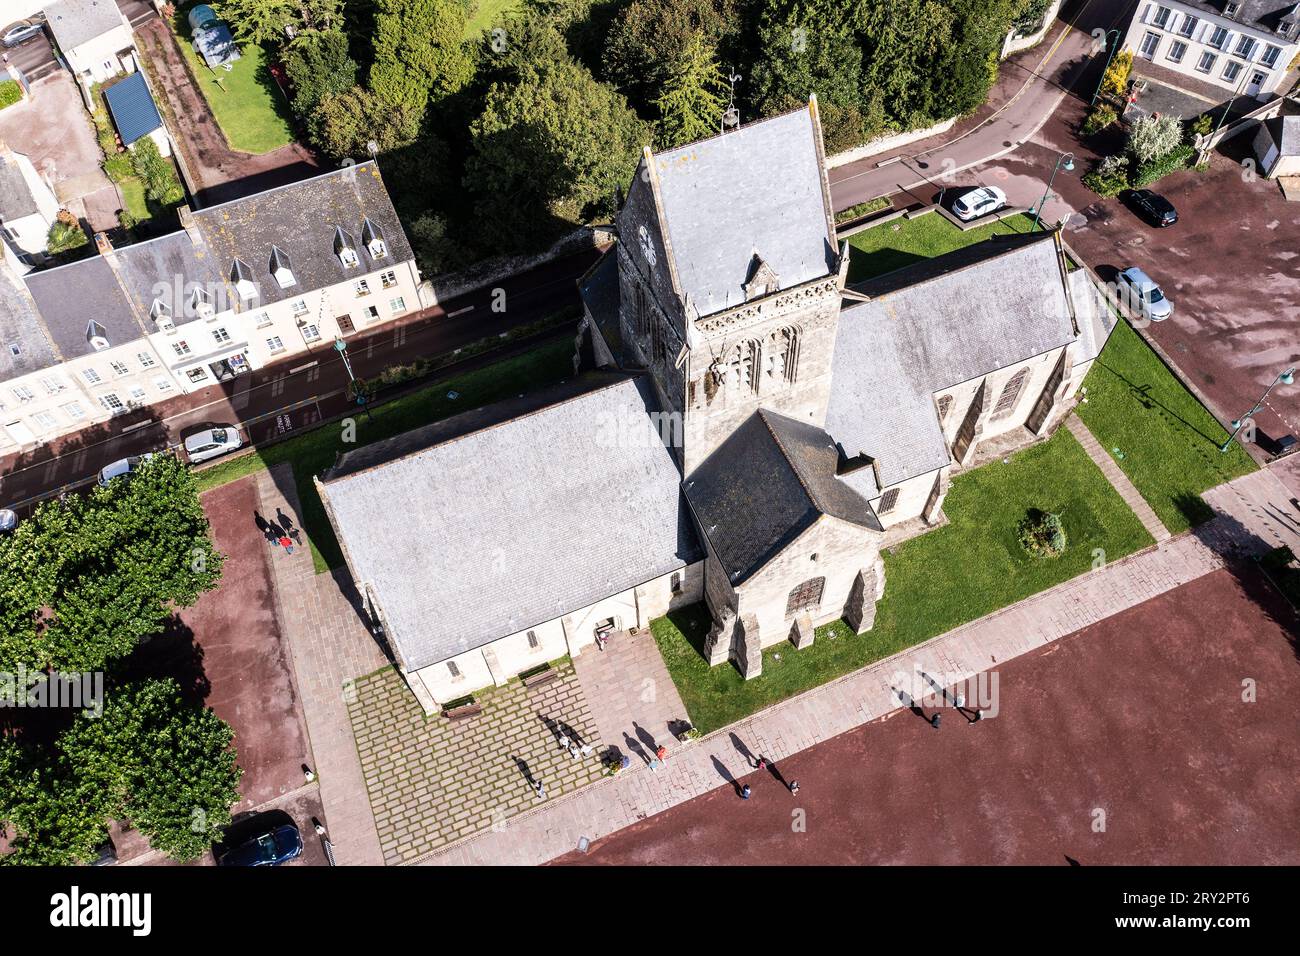 Die Kirche von Sainte-Mère-Église ist vor allem deshalb bekannt, weil sie im Zusammenhang mit der Landung in der Normandie am D-Day im Zweiten Weltkri Stock Photo